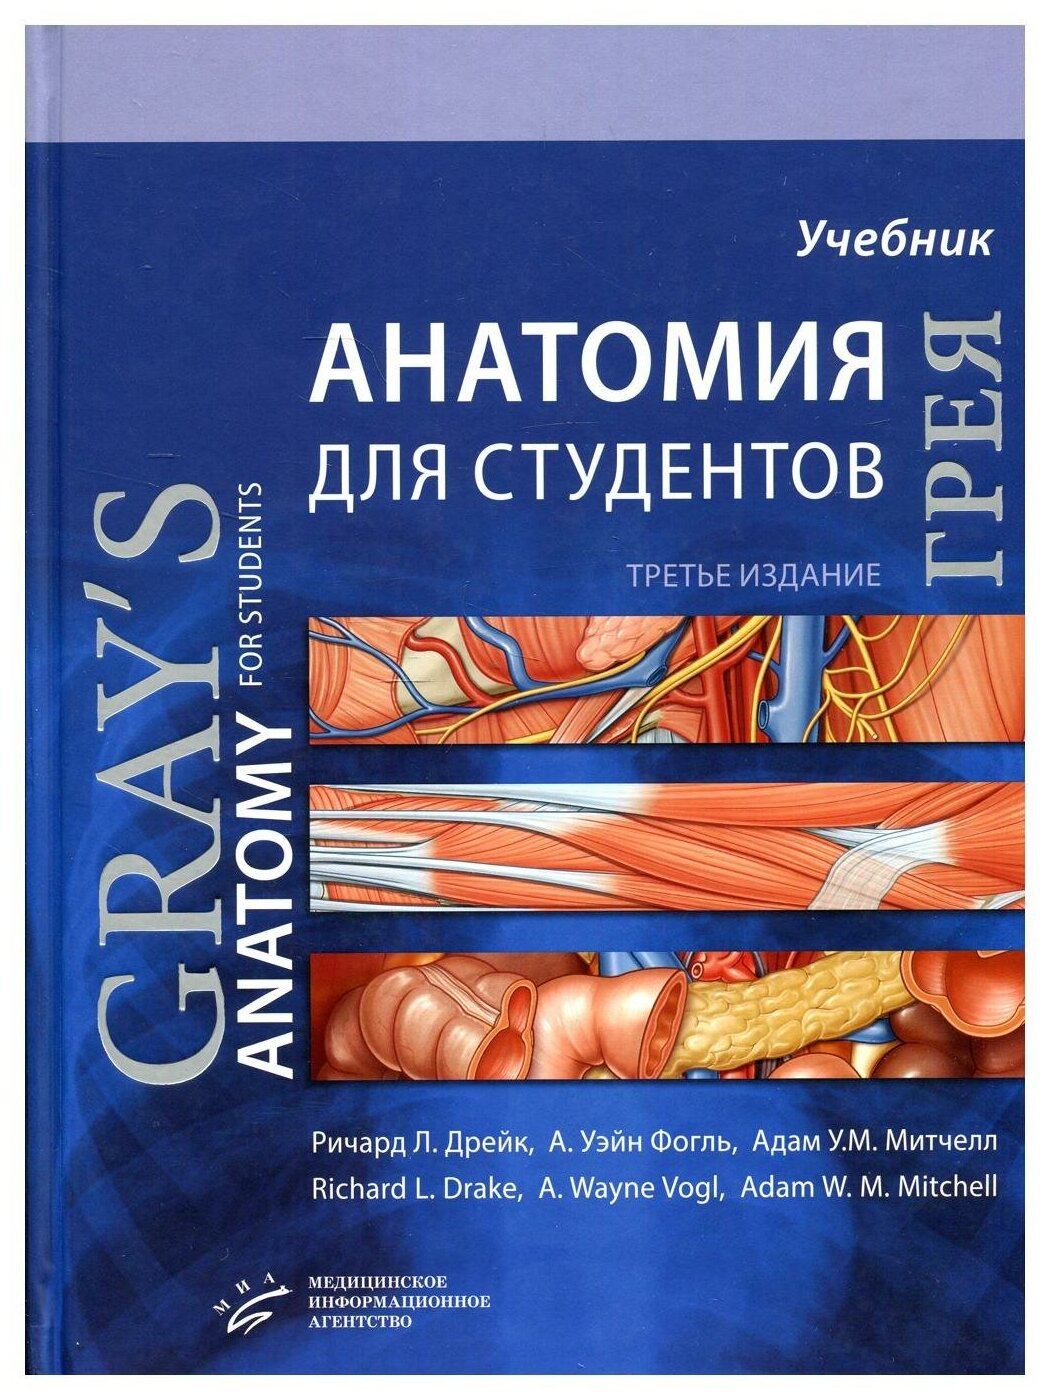 Анатомия Грея для студентов: Учебник для студентов мед. ВУЗов. 3-е изд